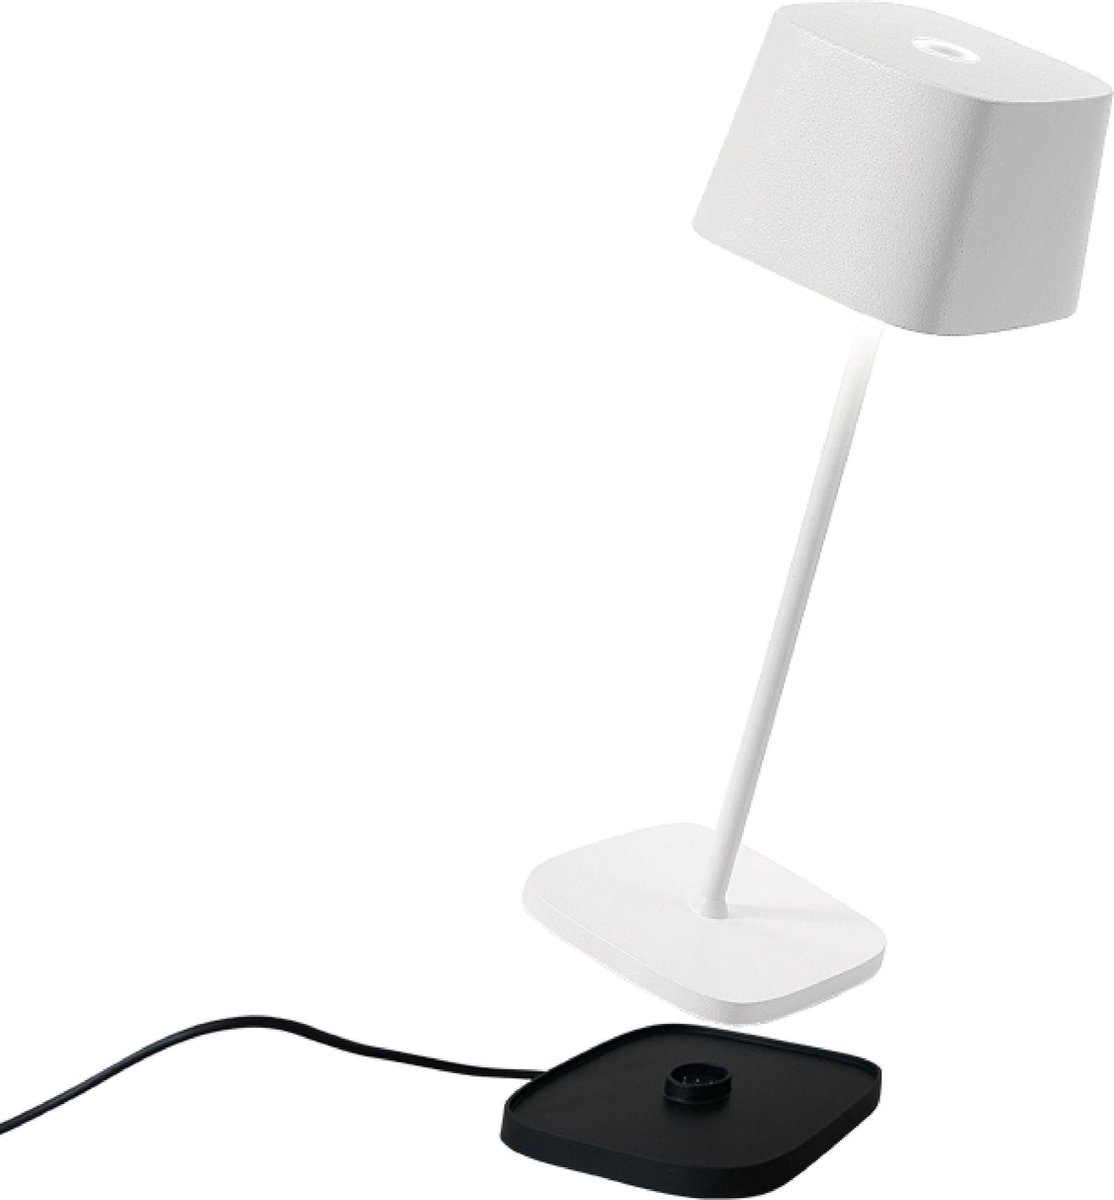 Zafferano - Ofelia MINI - Wit - H30cm - Ledlamp - Bureaulamp – Tafellamp – Snoerloos – Verplaatsbaar – Duurzaam - Voor binnen en buiten – LED - Dimbaar - 3000K - IP65 Spat Waterdicht - USB oplaadbaar